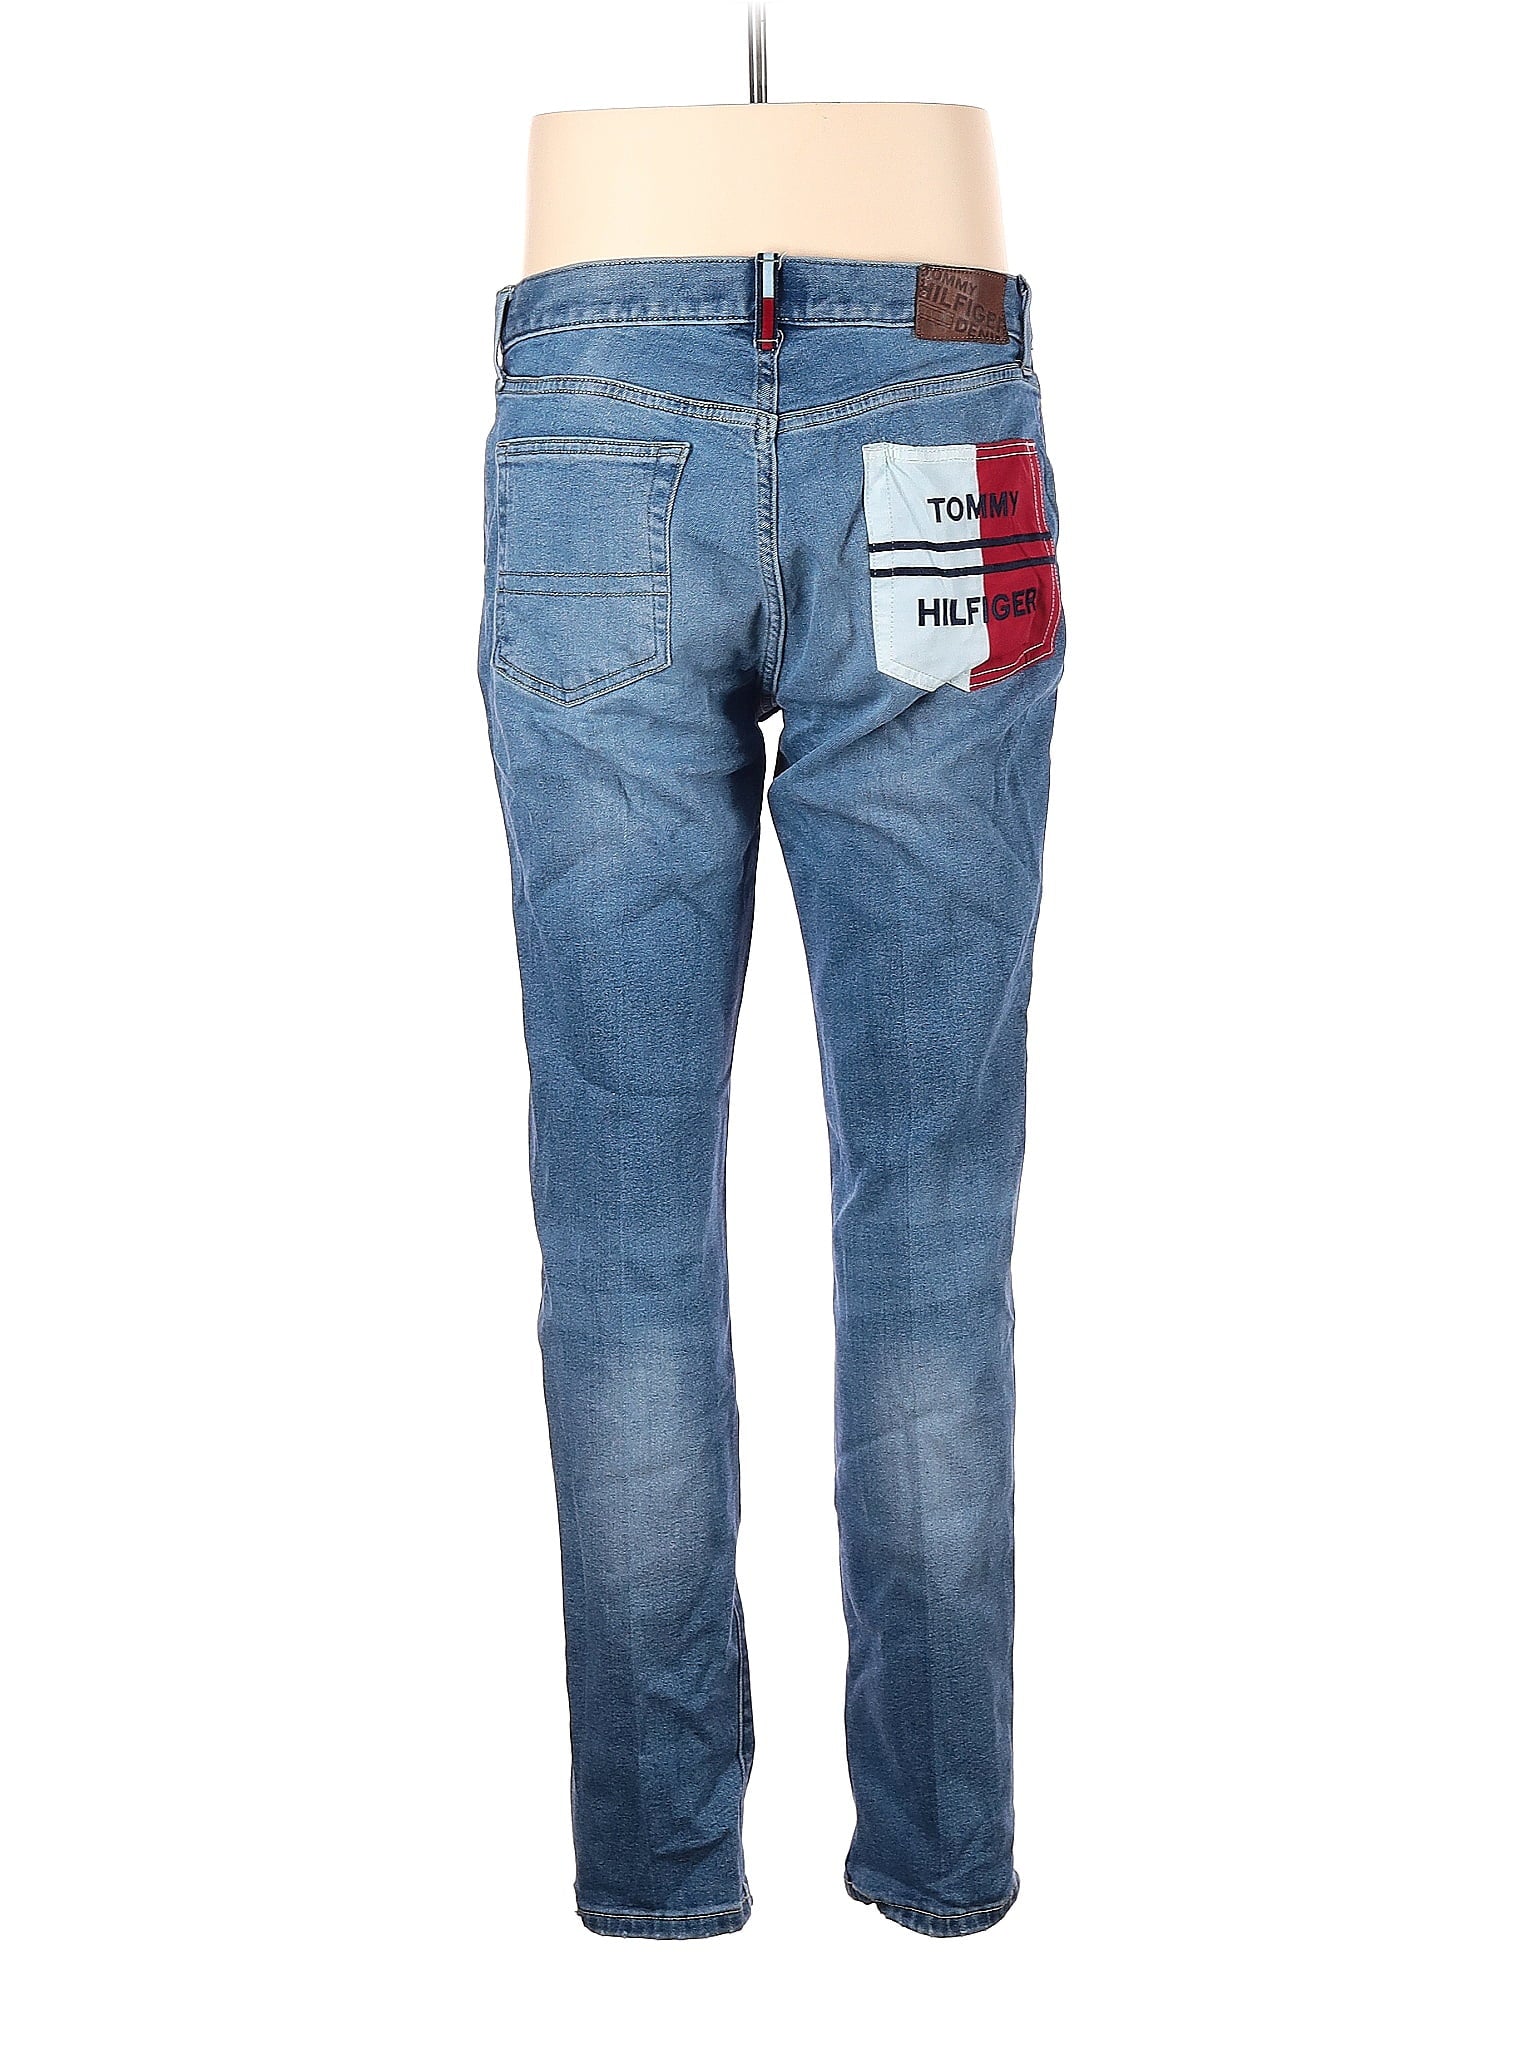 Jeans size - 34 (W34 L32)